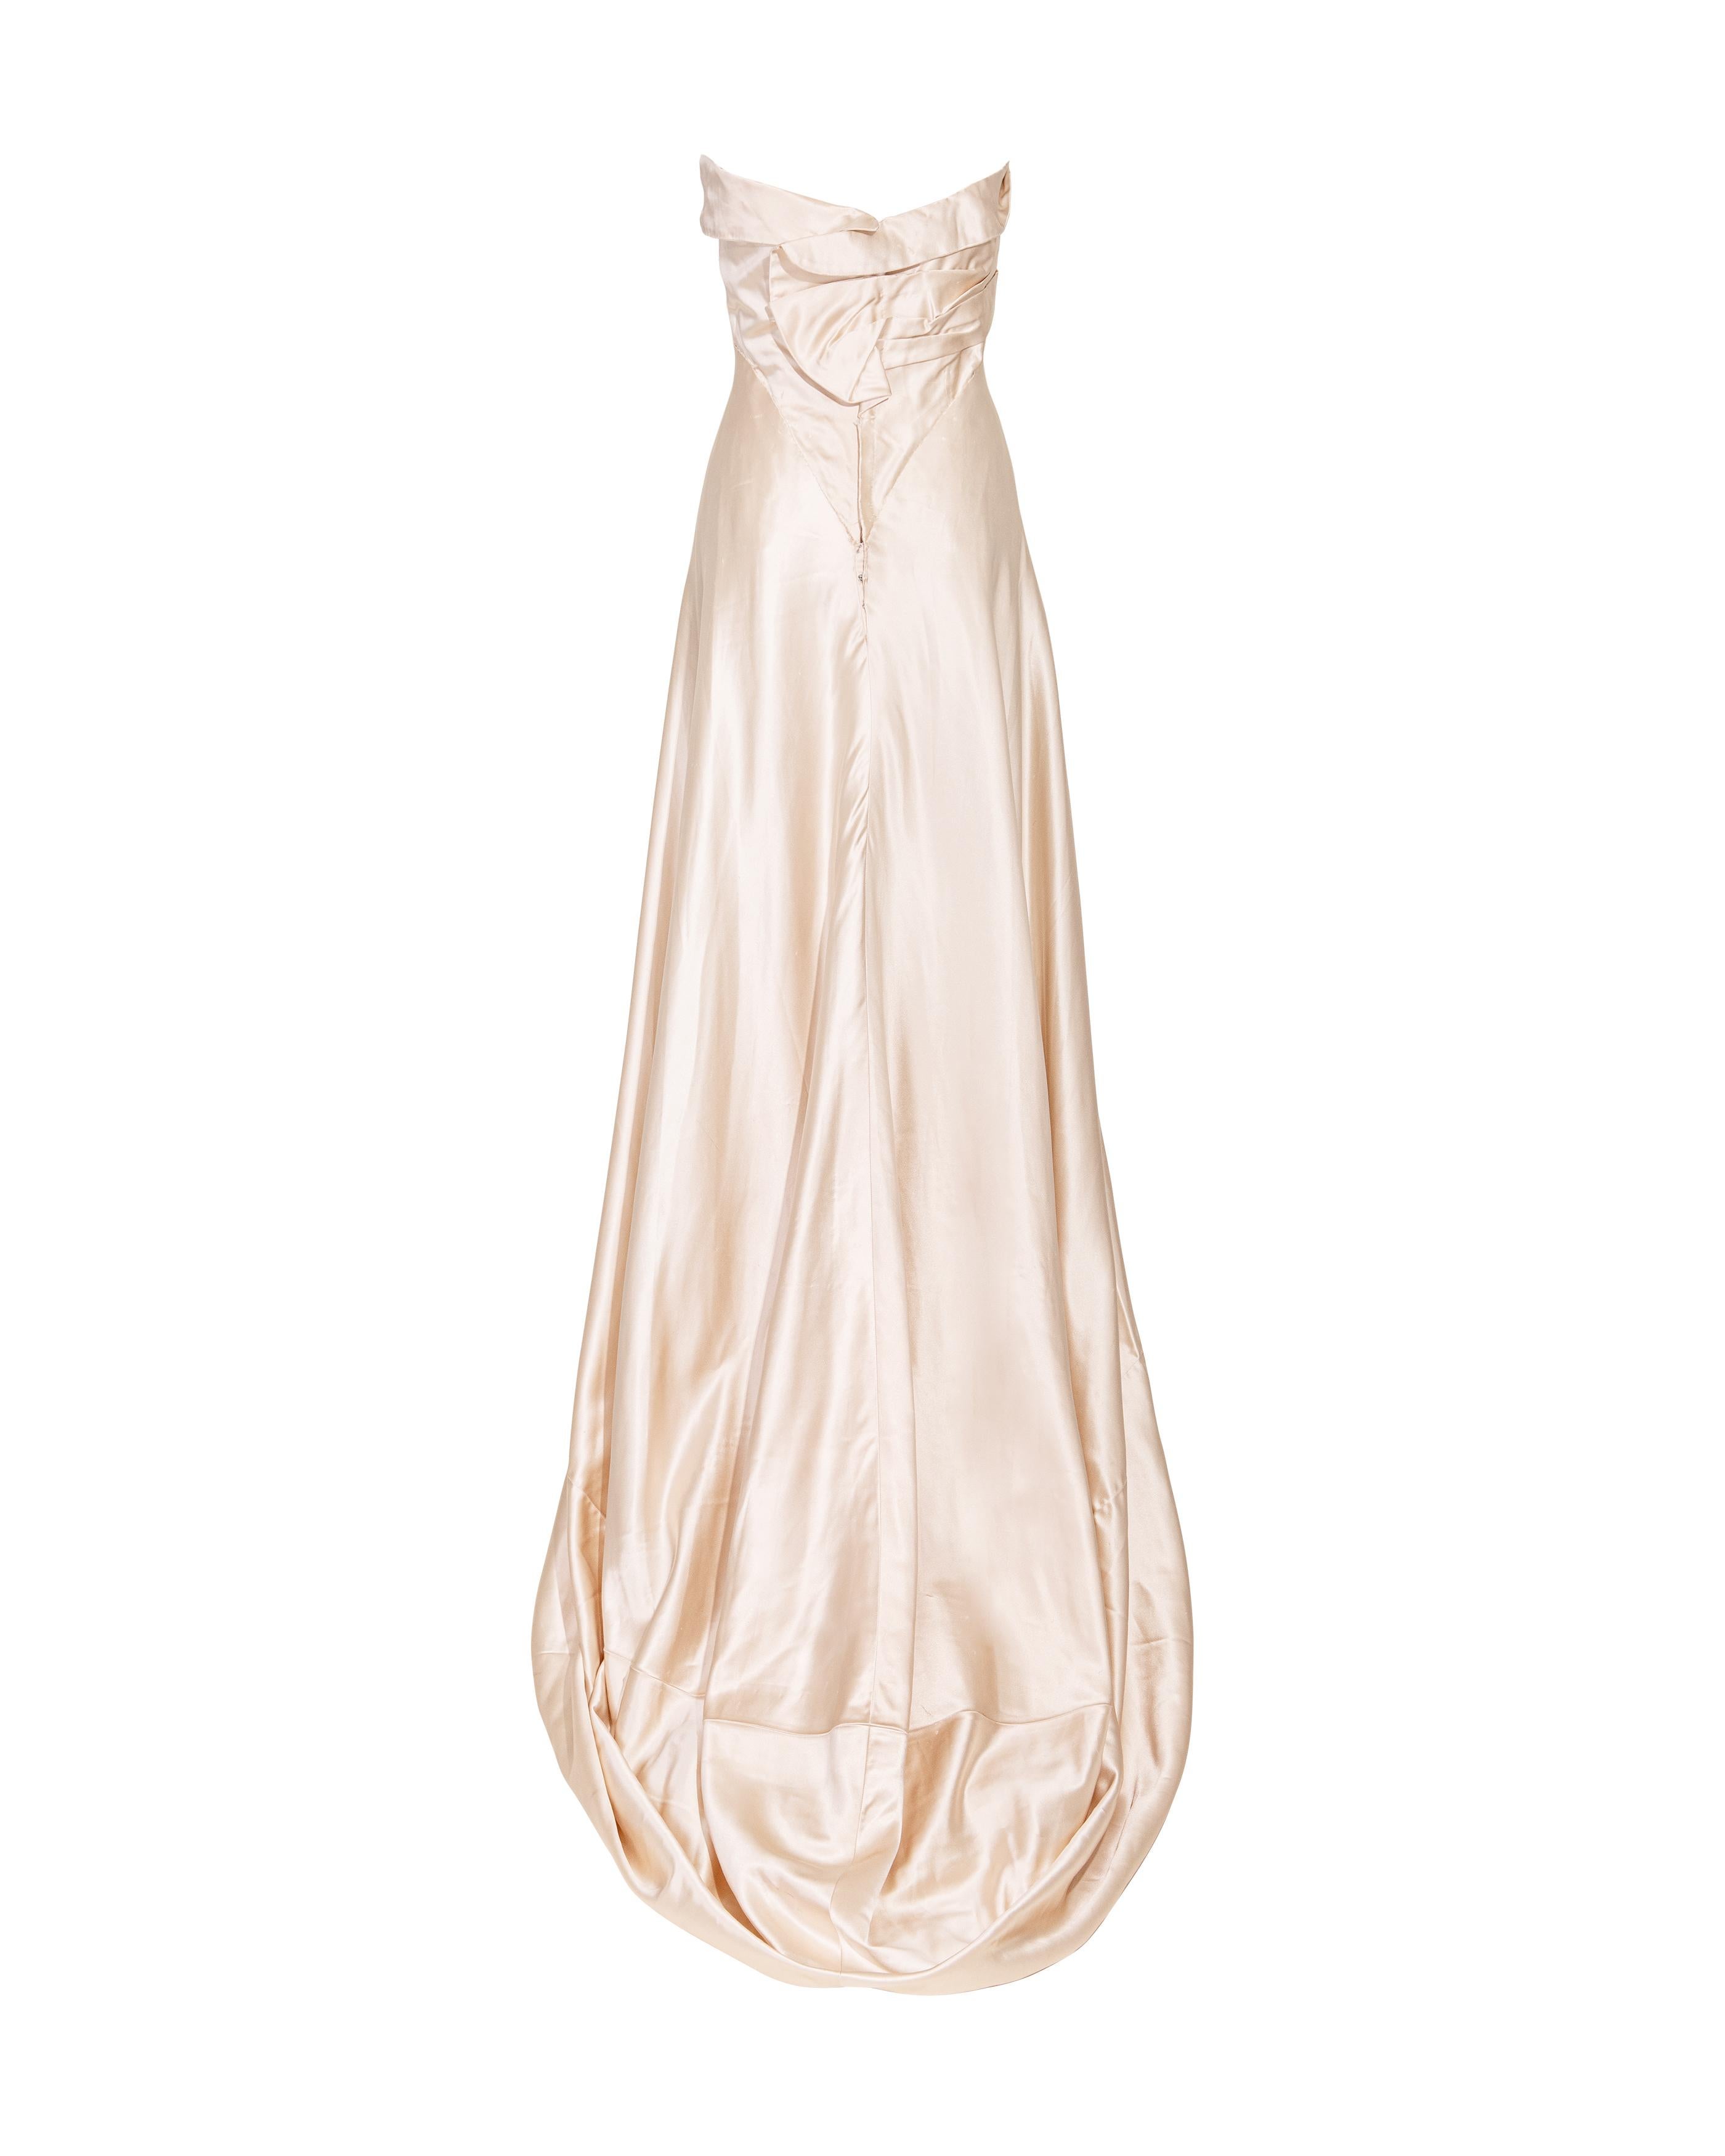 Irene Lentz Haute Couture des années 1940 - Robe à bretelles en soie crème à taille haute 1